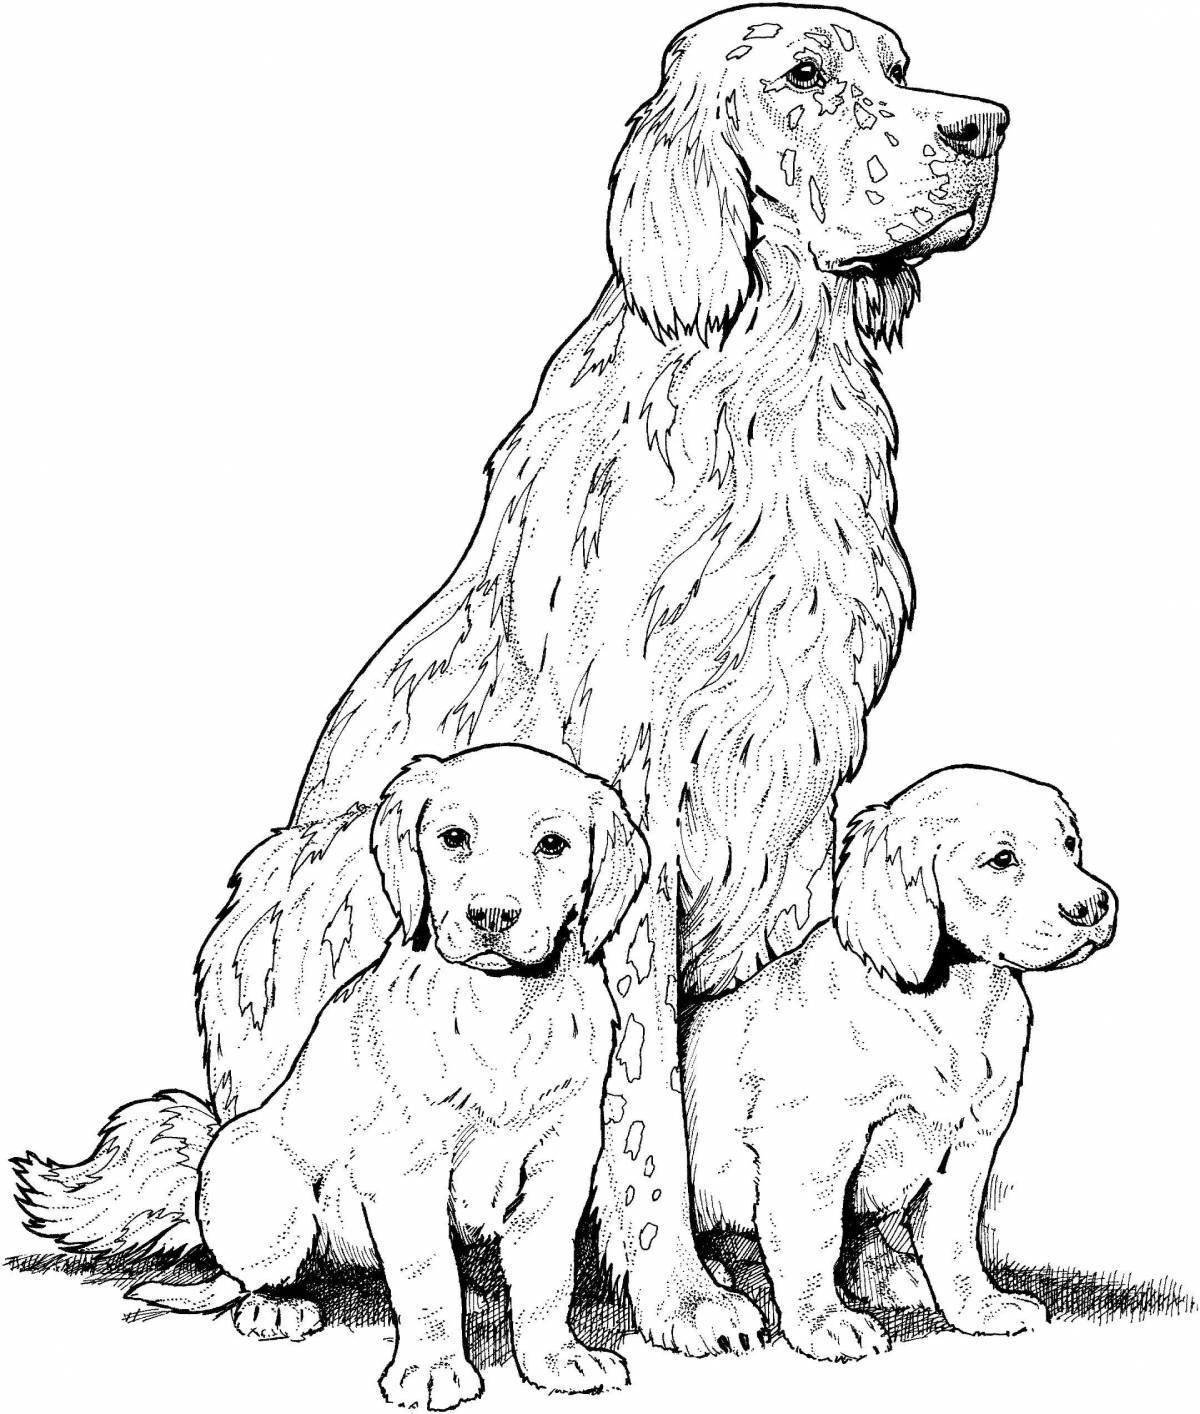 Раскраска Собака и два щенка, скачать и распечатать раскраску раздела Животные и их детеныши